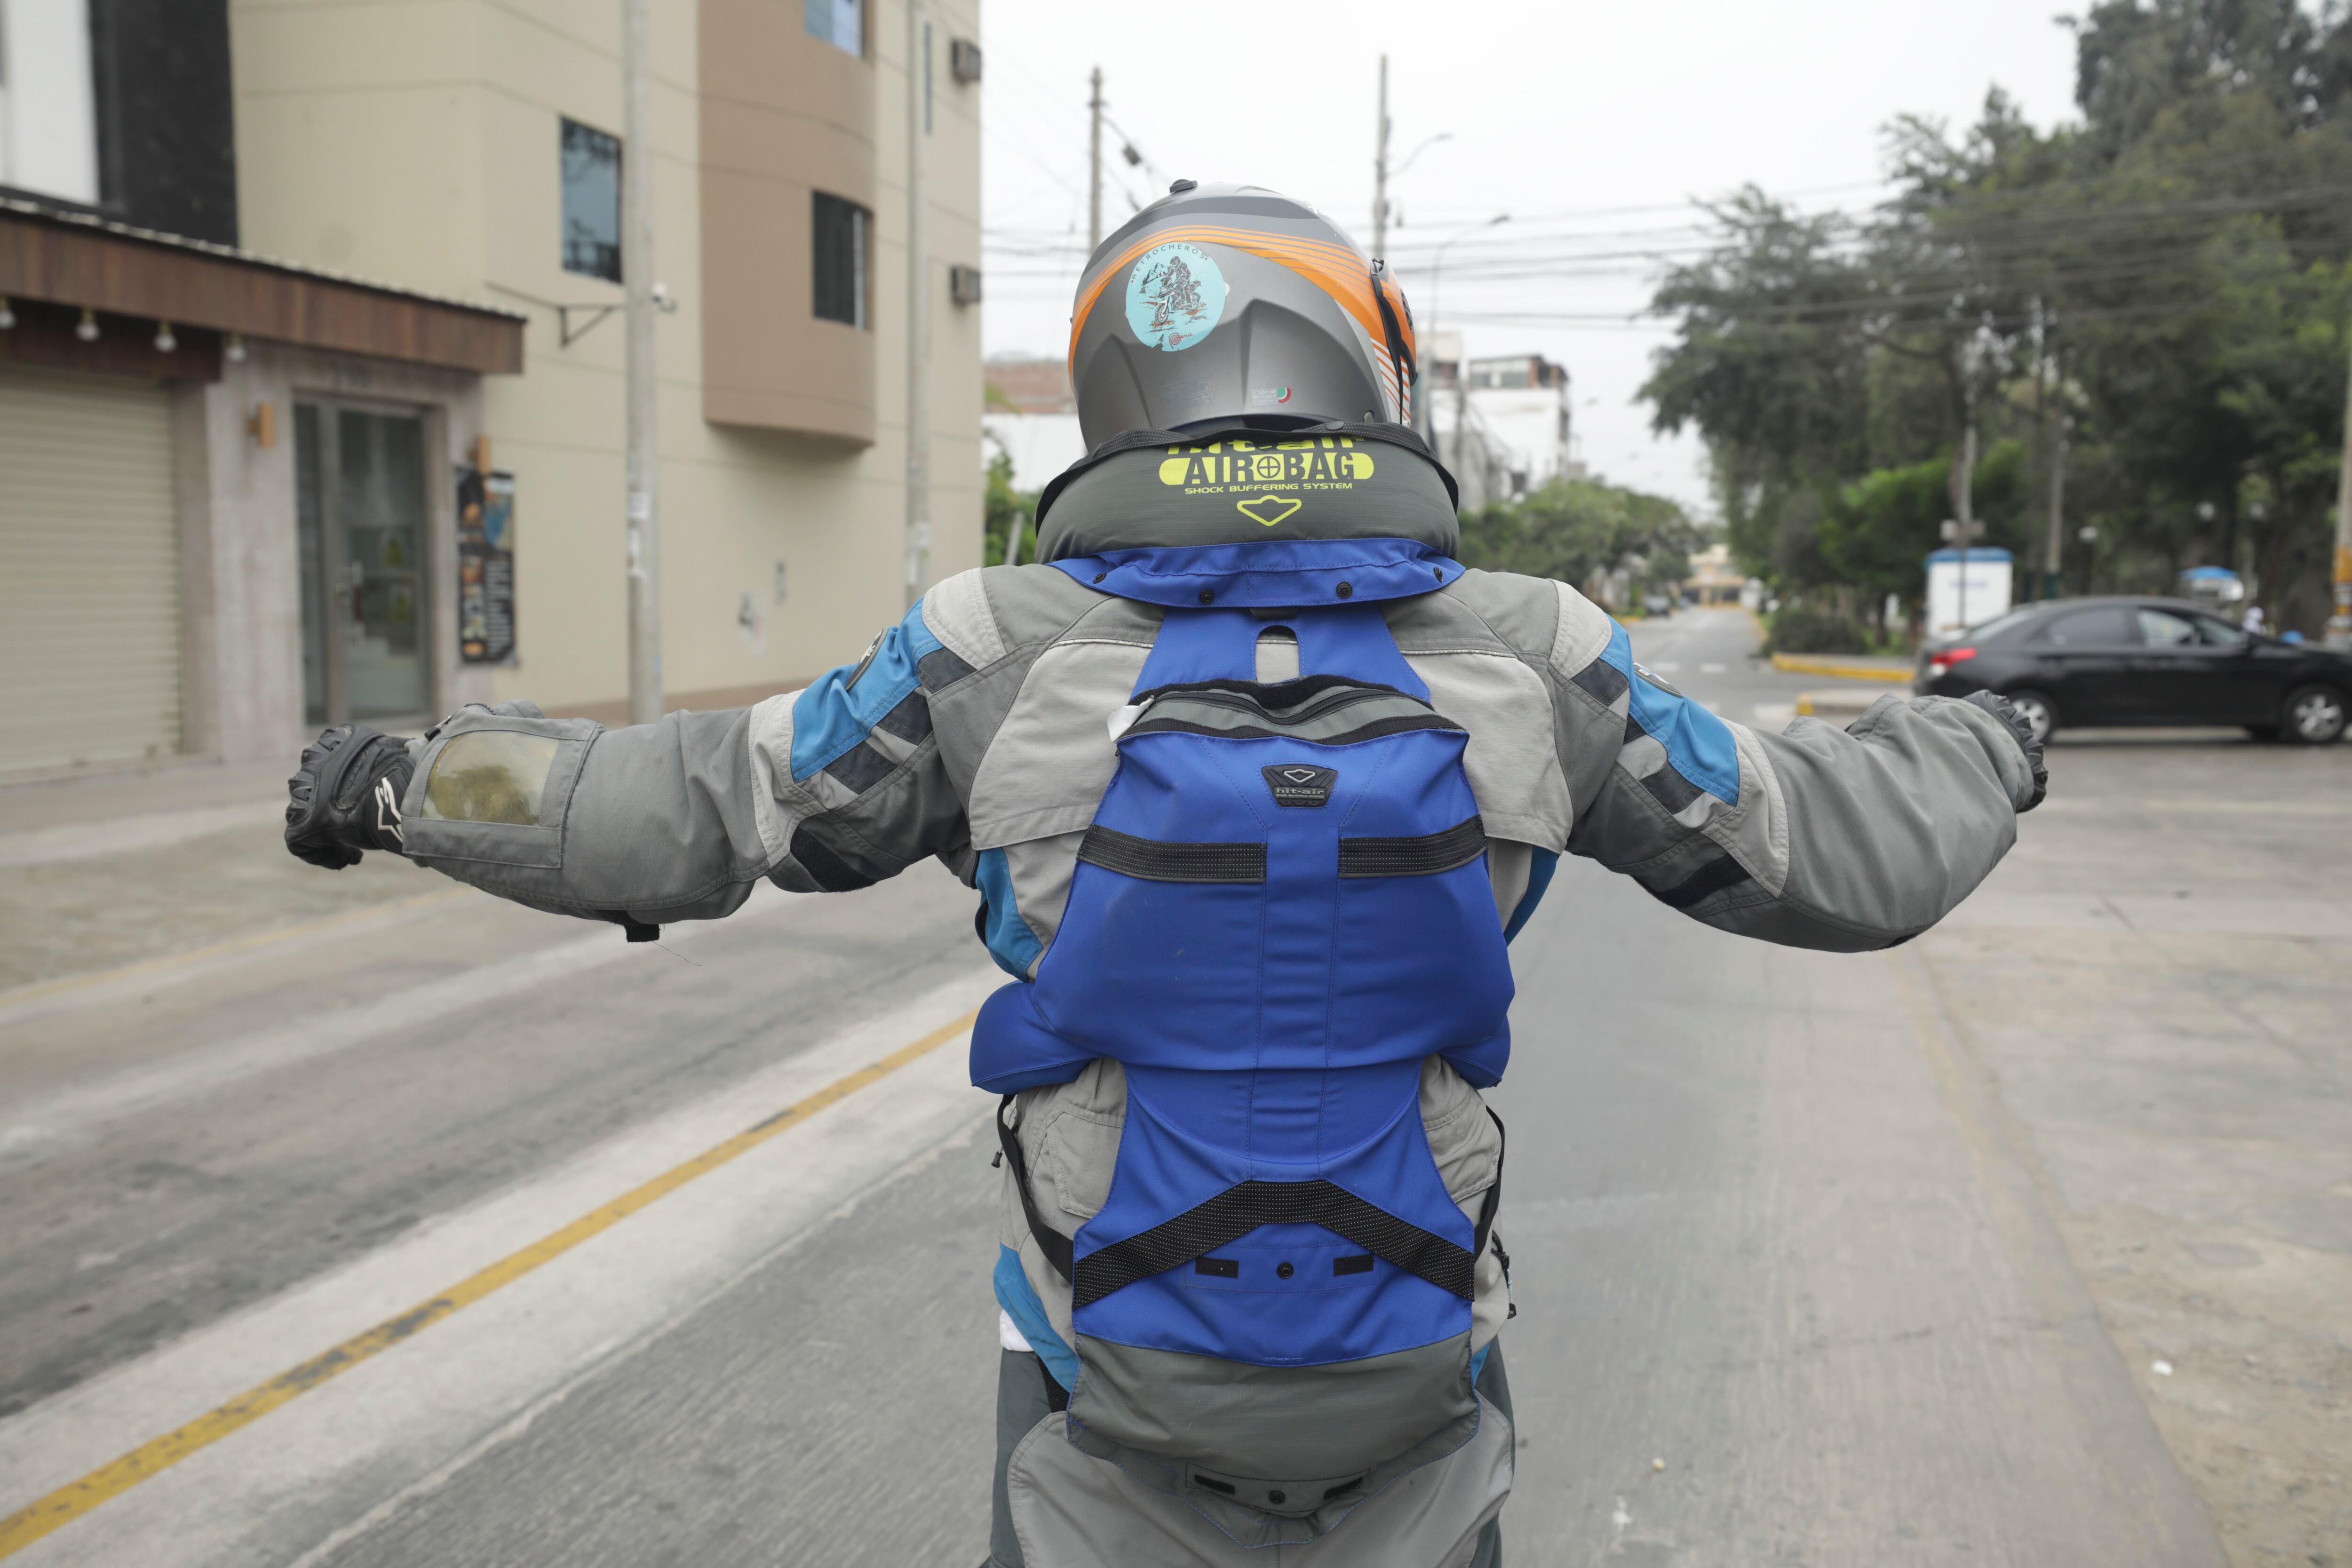 Los chalecos Hit Air protegen toda la columna vertebral del motociclista. Foto: Britanie Arroyo Dueñaz